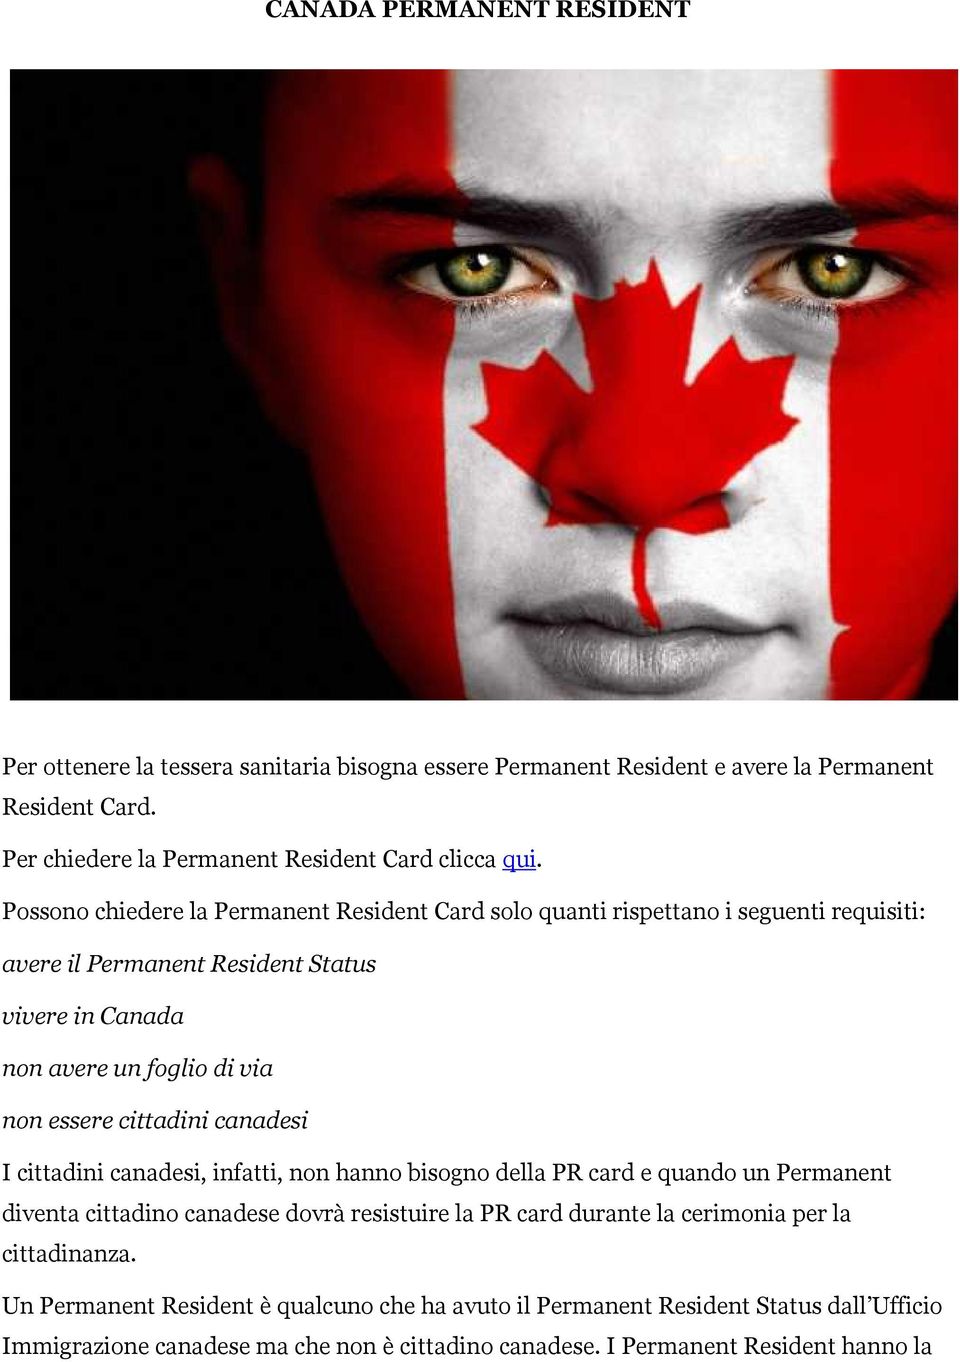 cittadini canadesi I cittadini canadesi, infatti, non hanno bisogno della PR card e quando un Permanent diventa cittadino canadese dovrà resistuire la PR card durante la cerimonia per